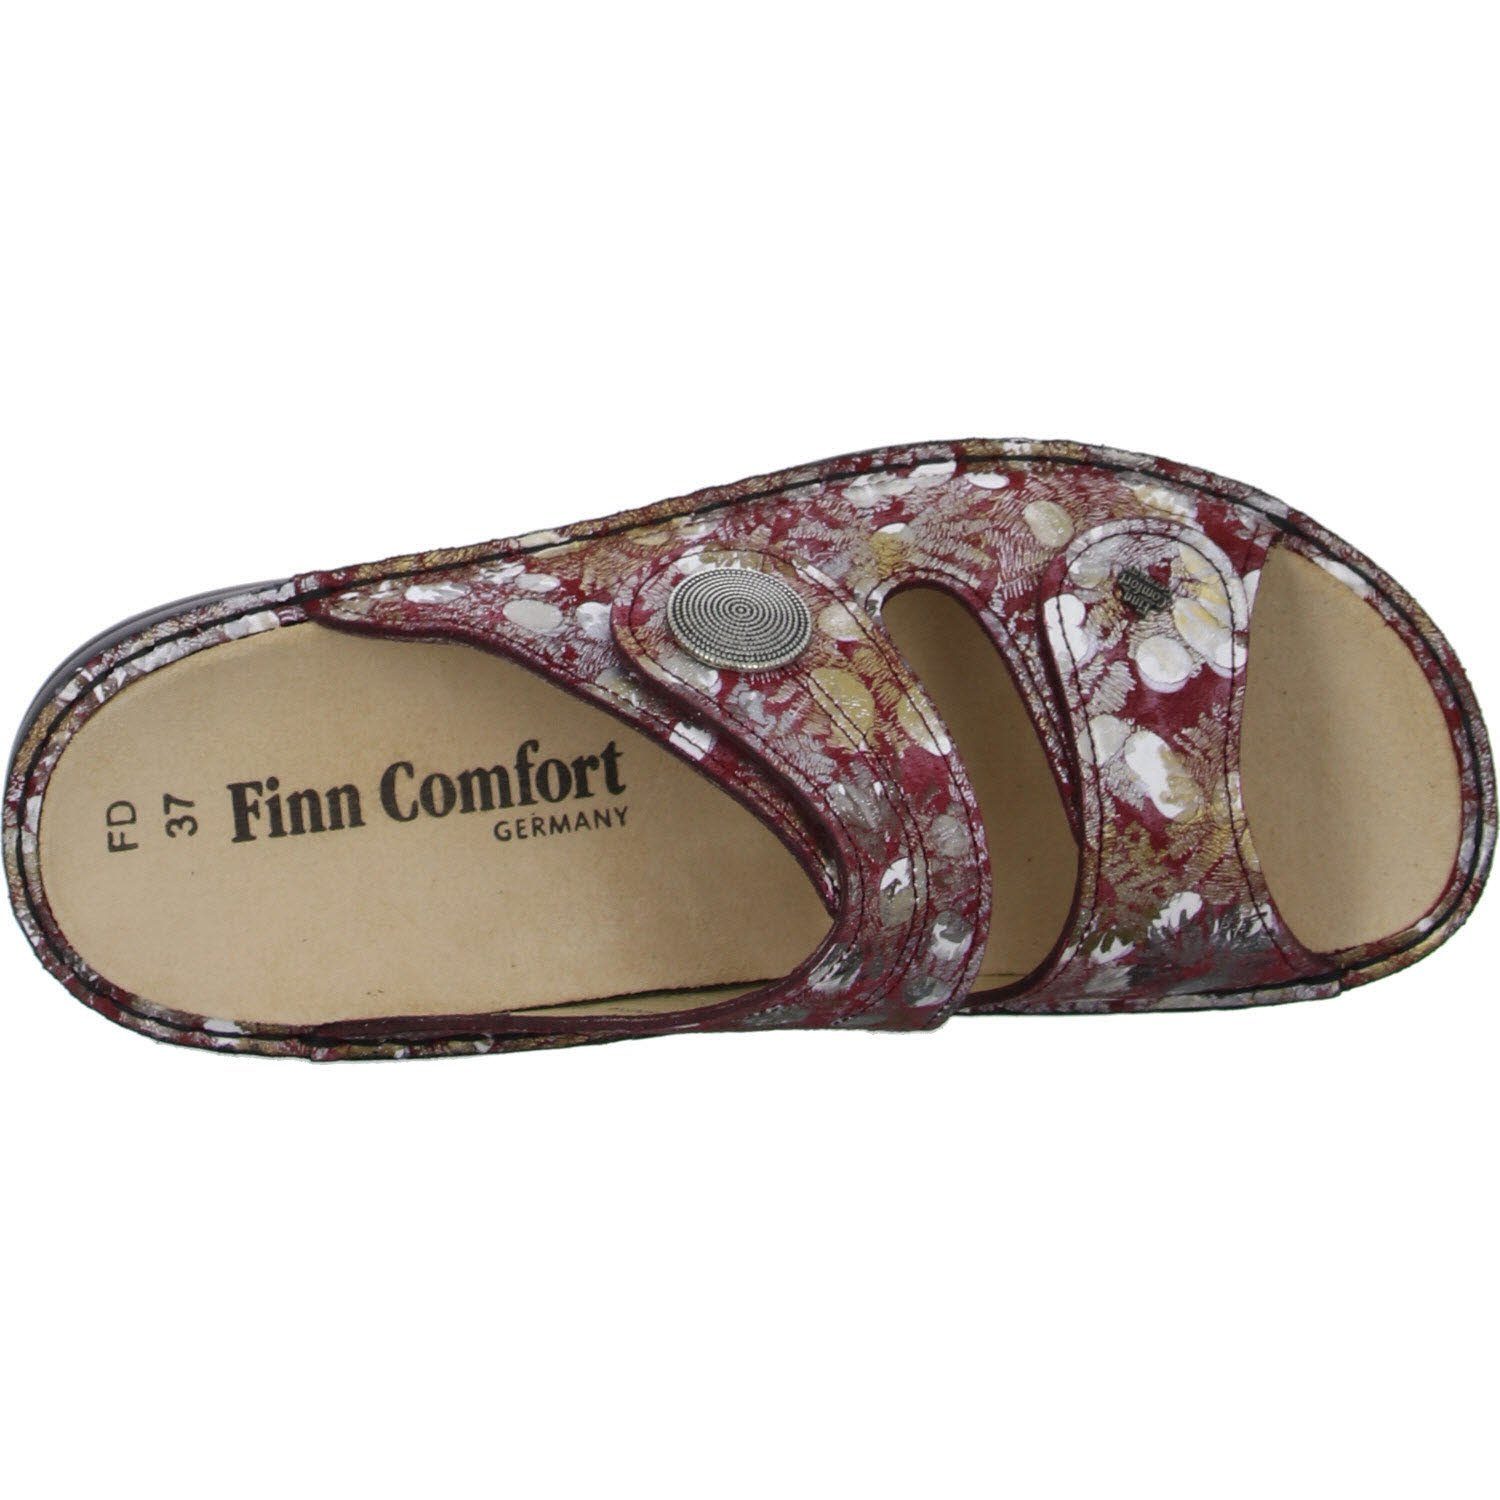 Pantolette Comfort Finn 02550-109378 berry/iris